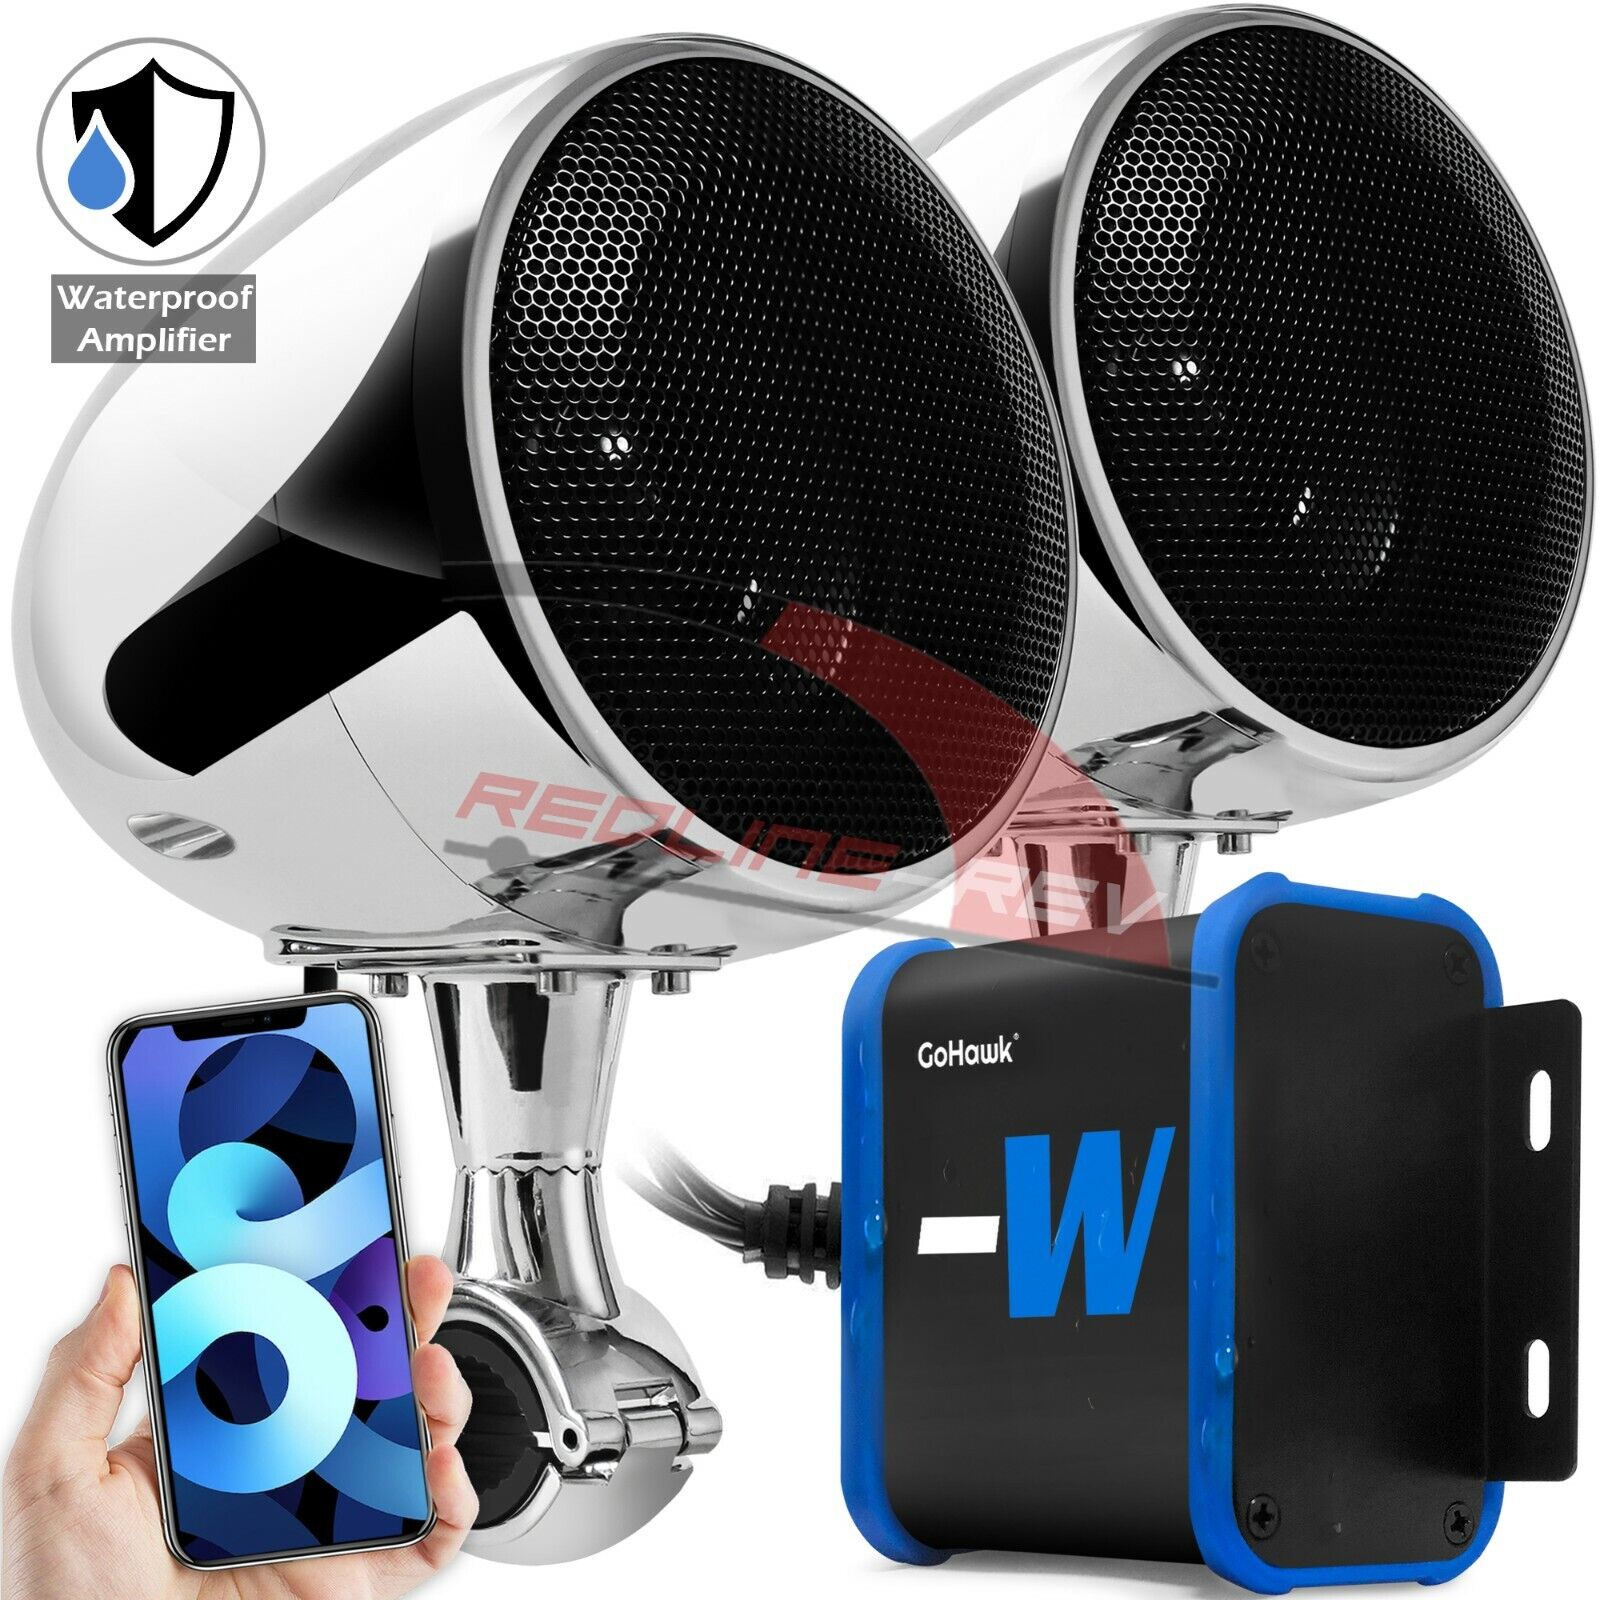 Refurb Bluetooth Waterproof Amplifier Motorcycle Stereo Speaker System USB Radio